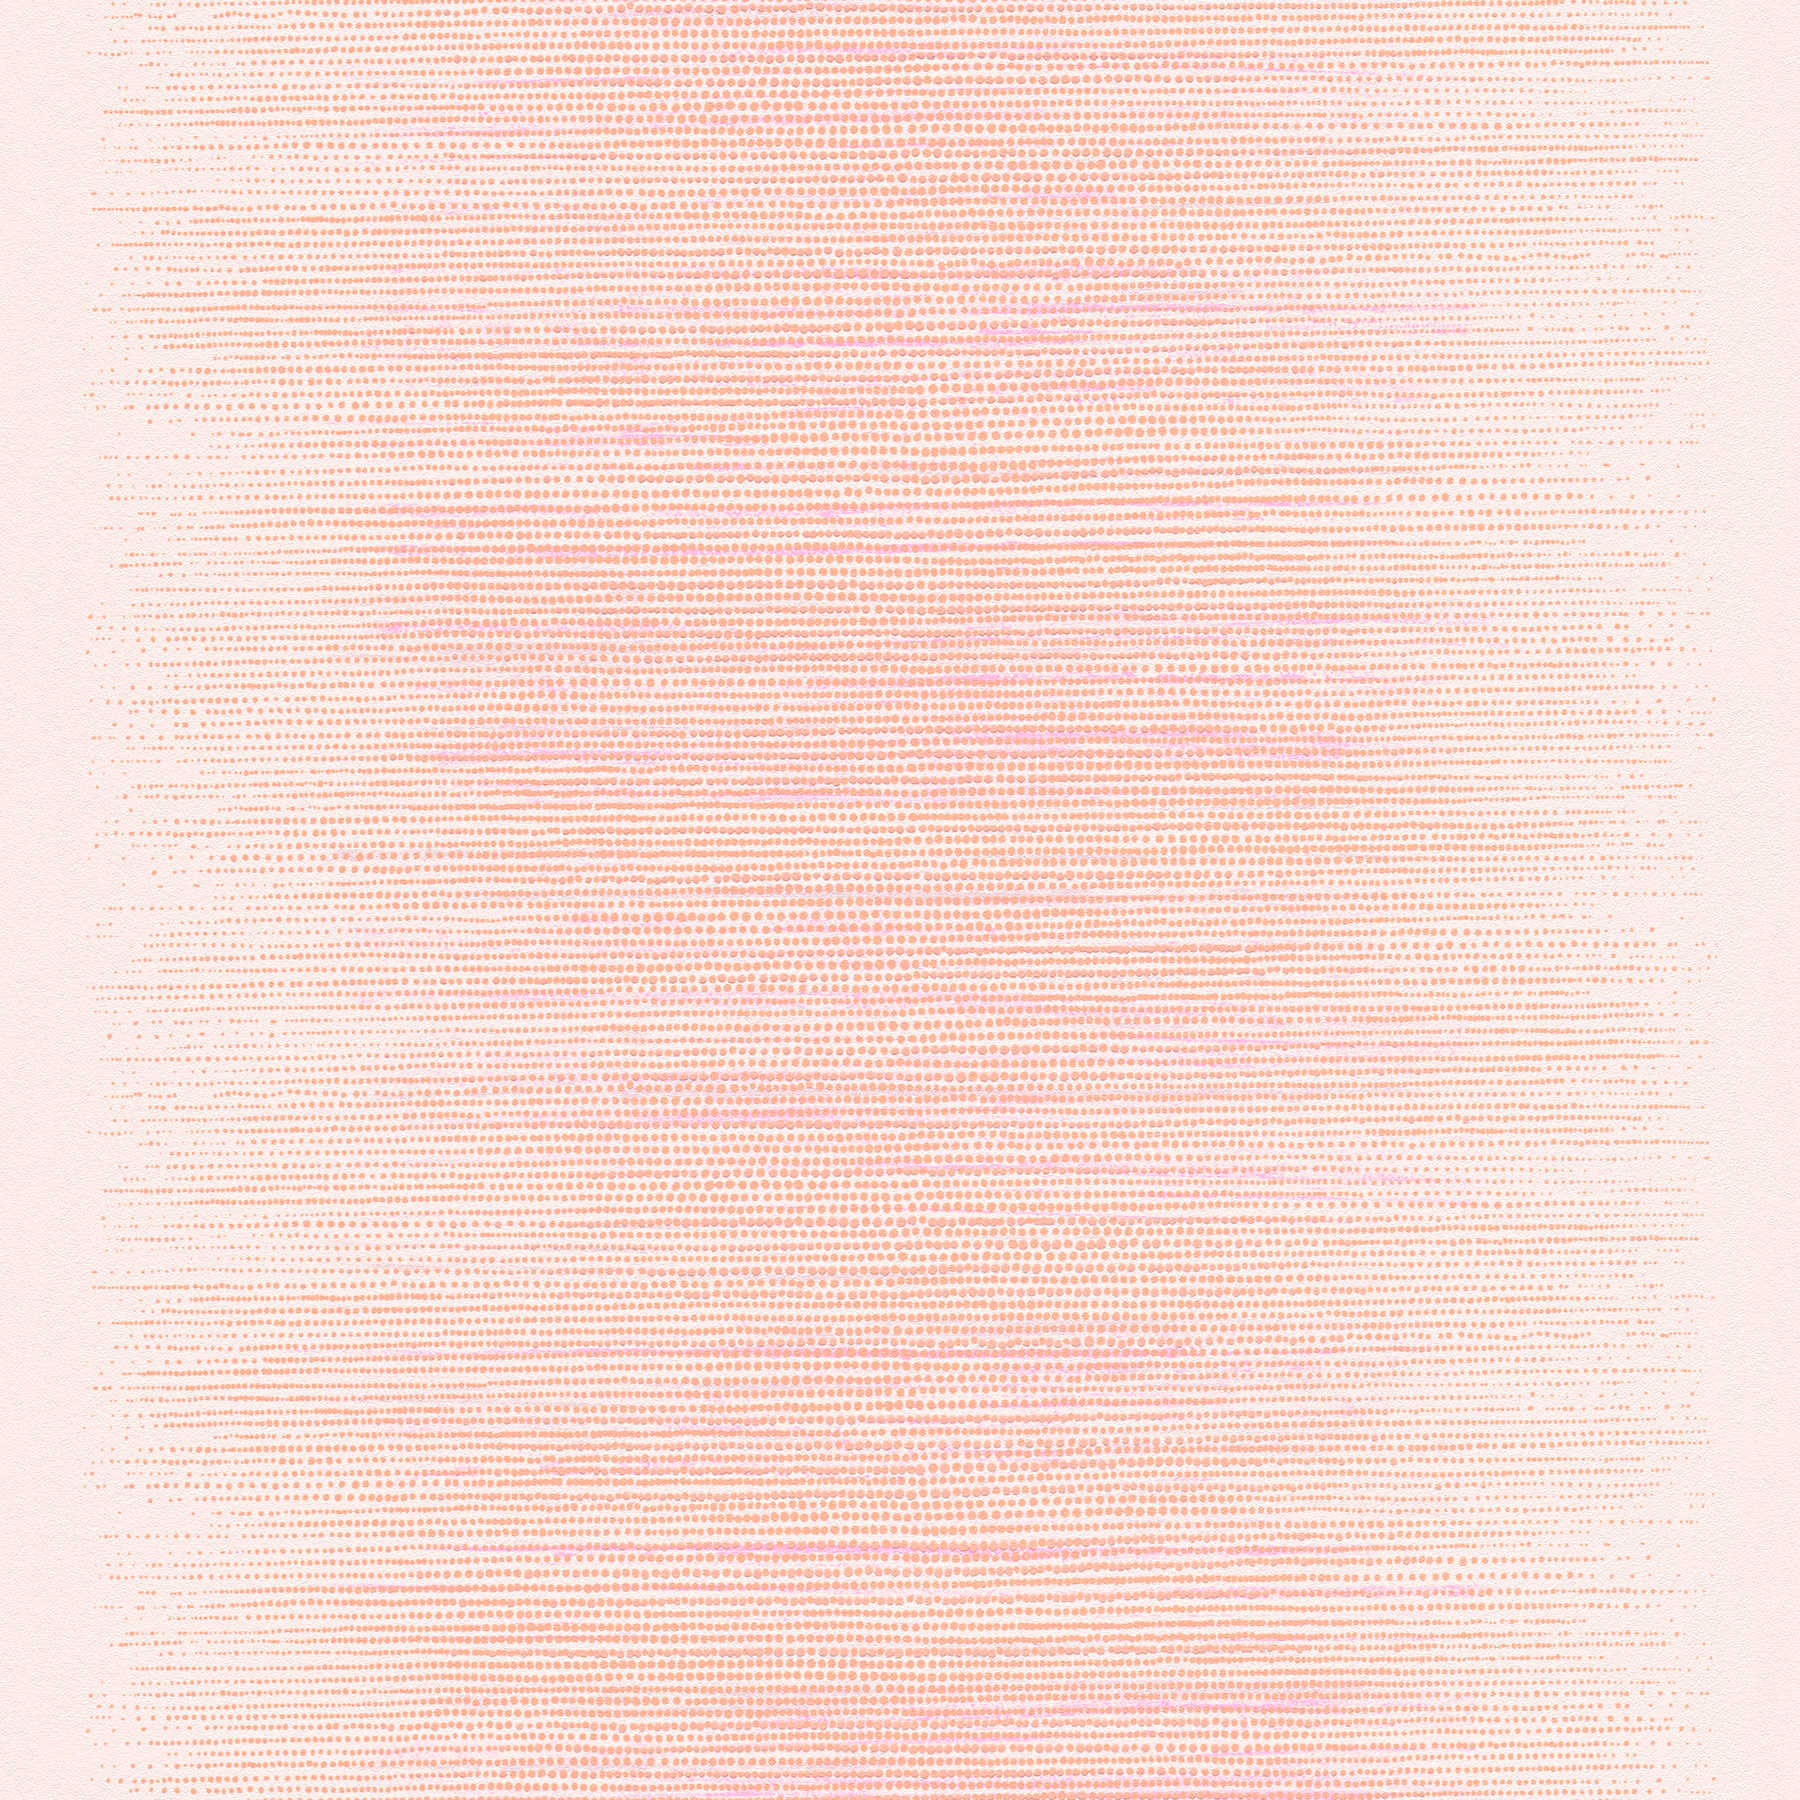             Scandinavian style wallpaper with dots design - pink, orange, beige
        